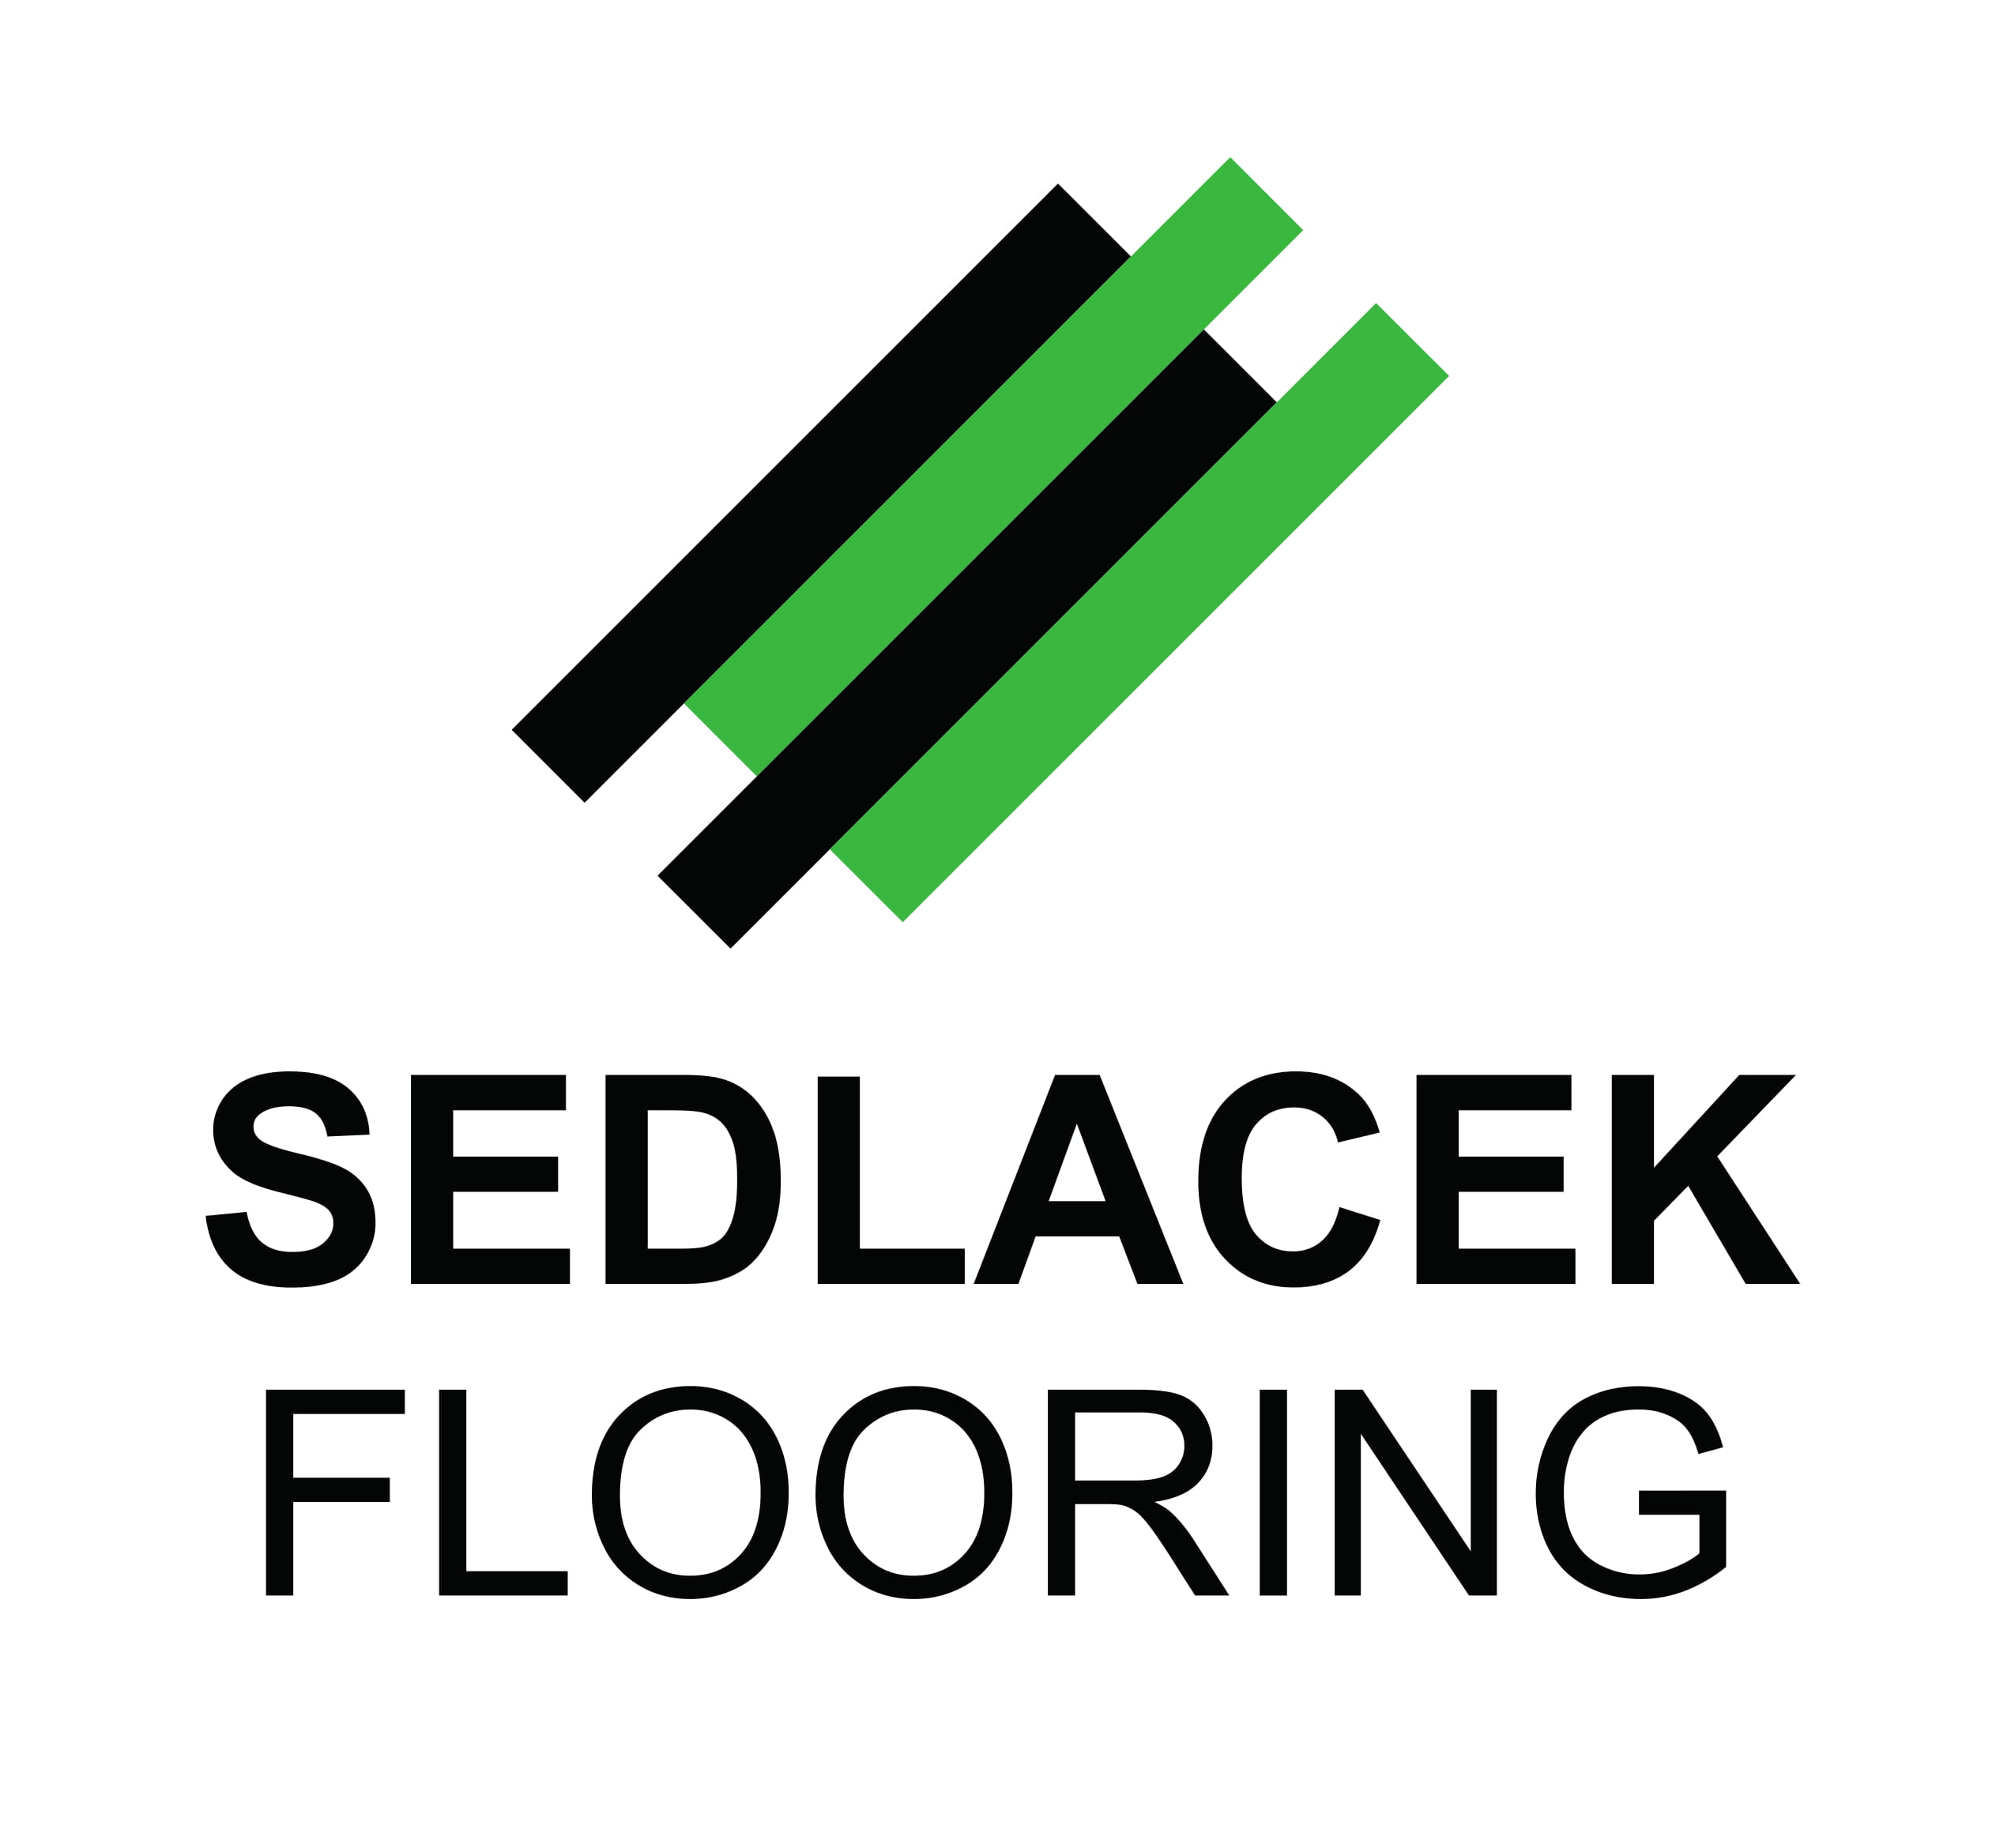 Sedlacek Flooring